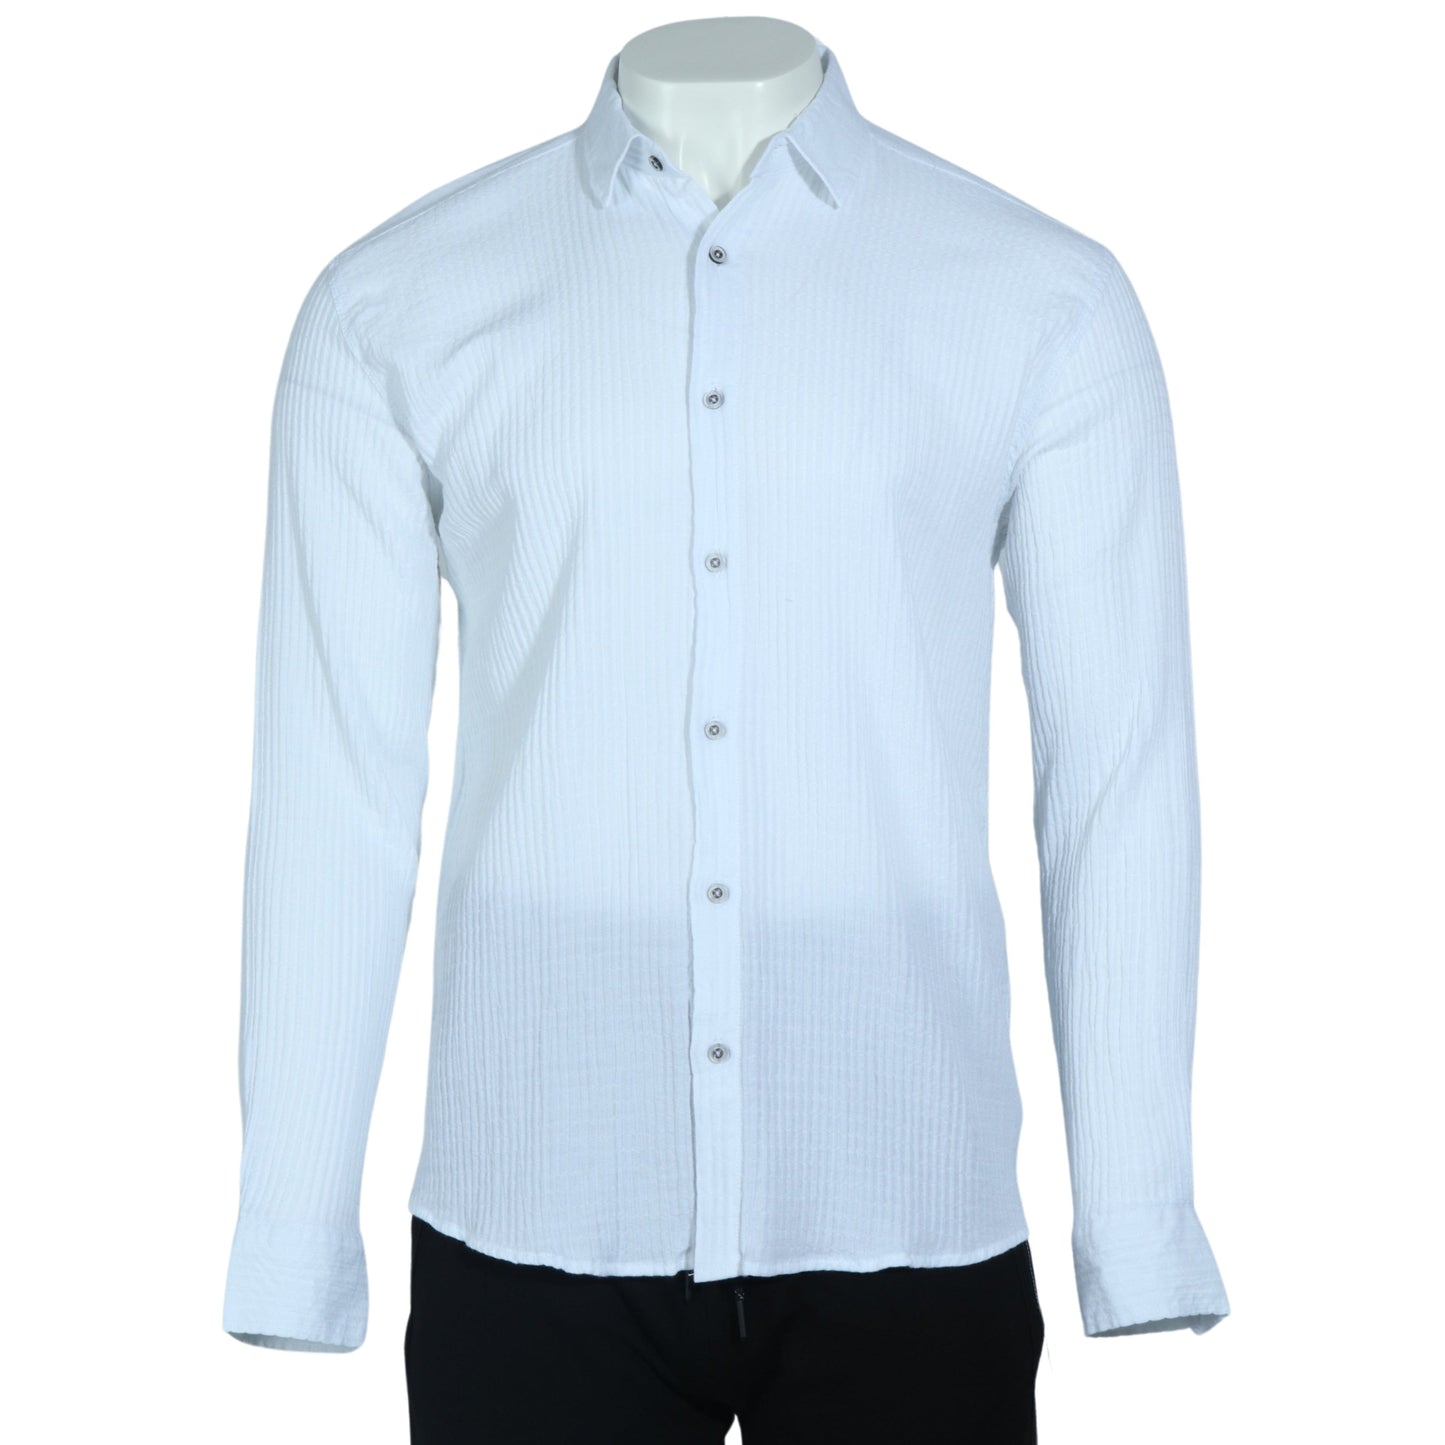 DYNAMO Mens Tops L / White DYNAMO - Button Down Shirt